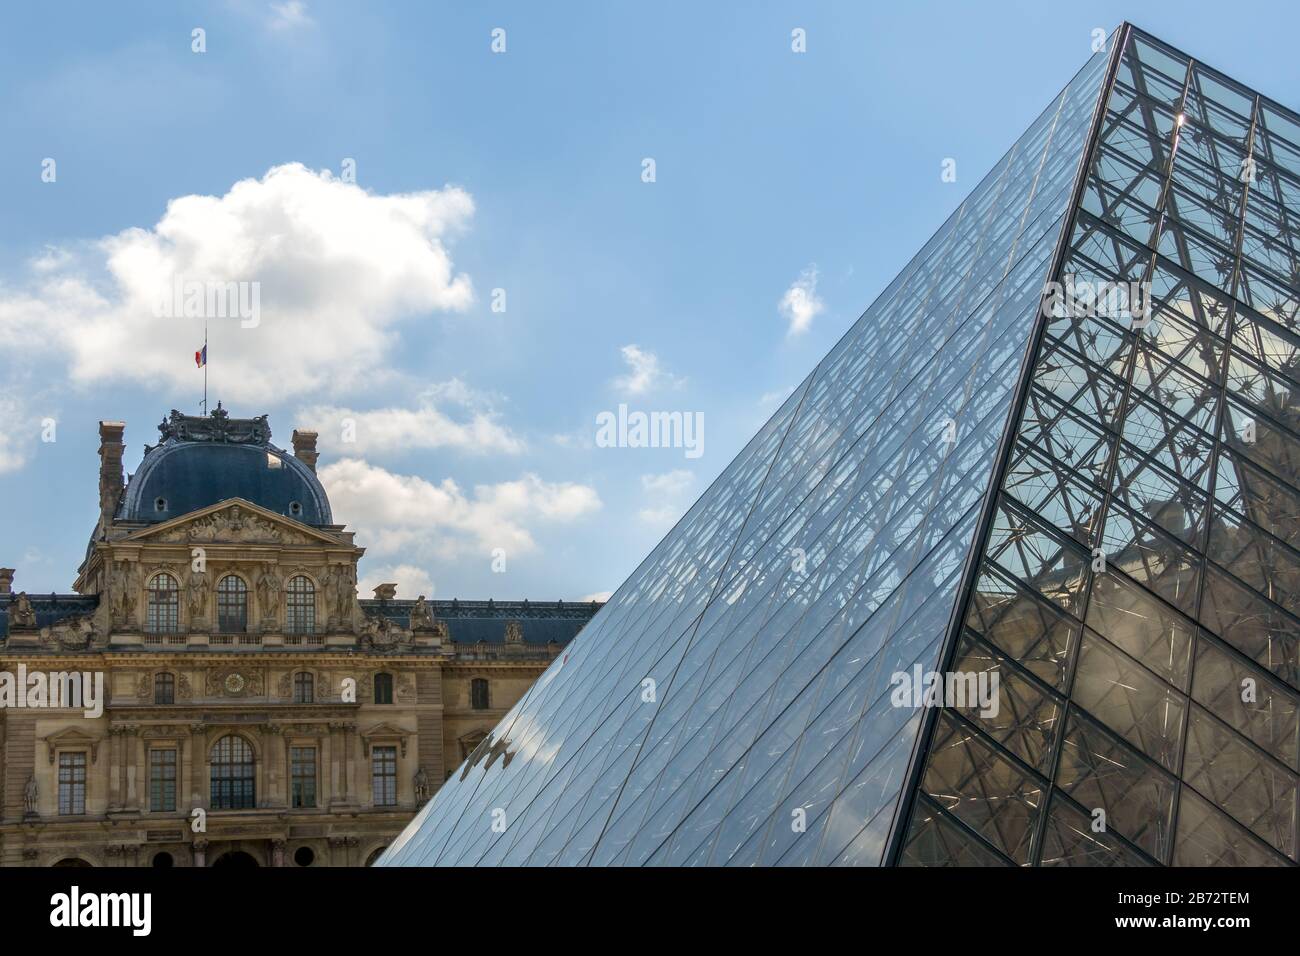 France. Journée ensoleillée dans la cour parisienne du Musée du Louvre. Ancienne façade et pyramide moderne en verre Banque D'Images